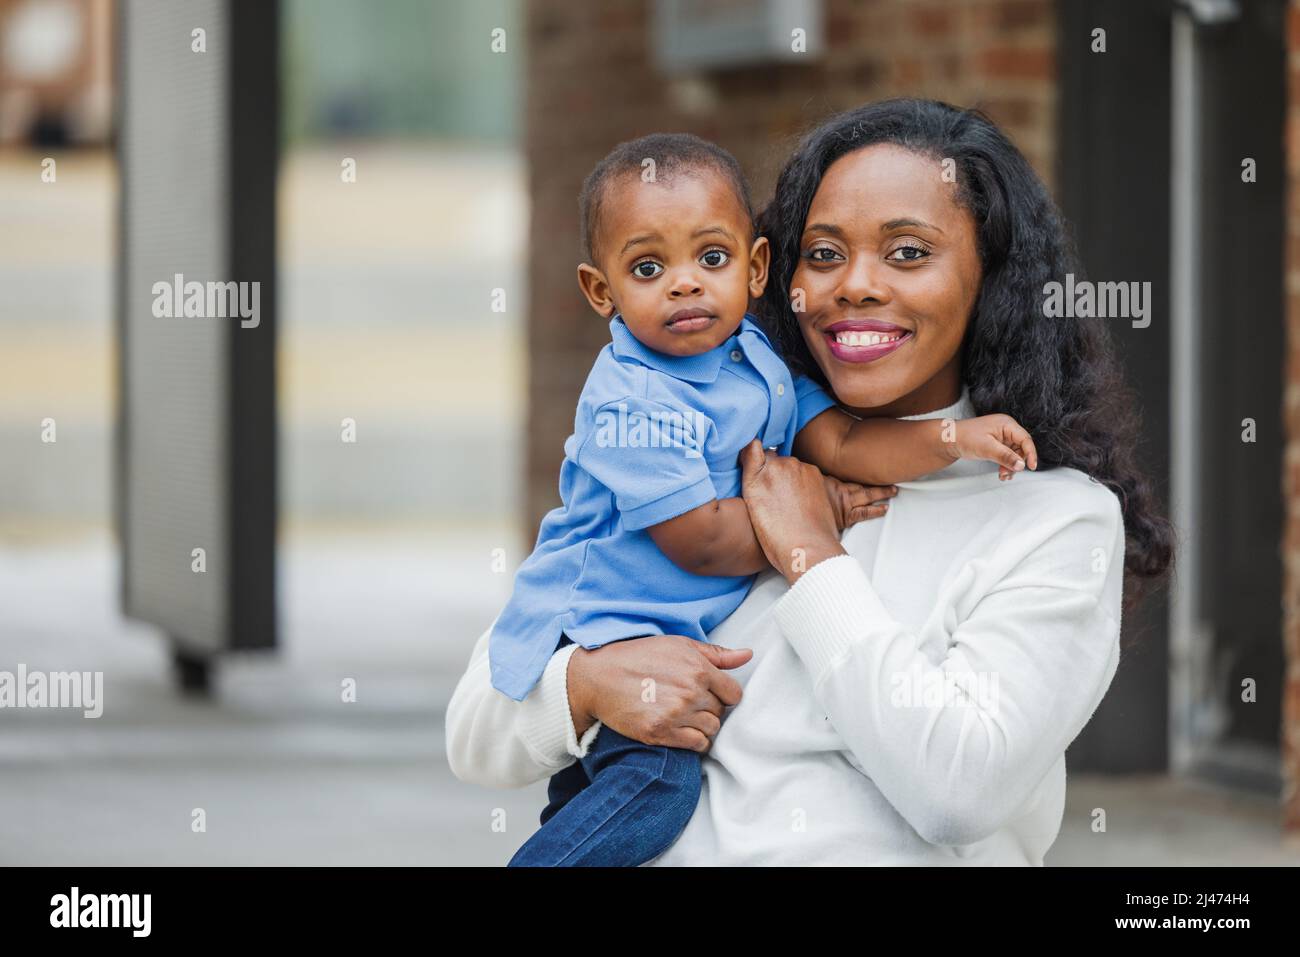 Eine schöne afroamerikanische Mutter, die draußen auf einer Treppe sitzt und ihren kleinen Jungen in der Hand hält, sieht traurig aus Stockfoto